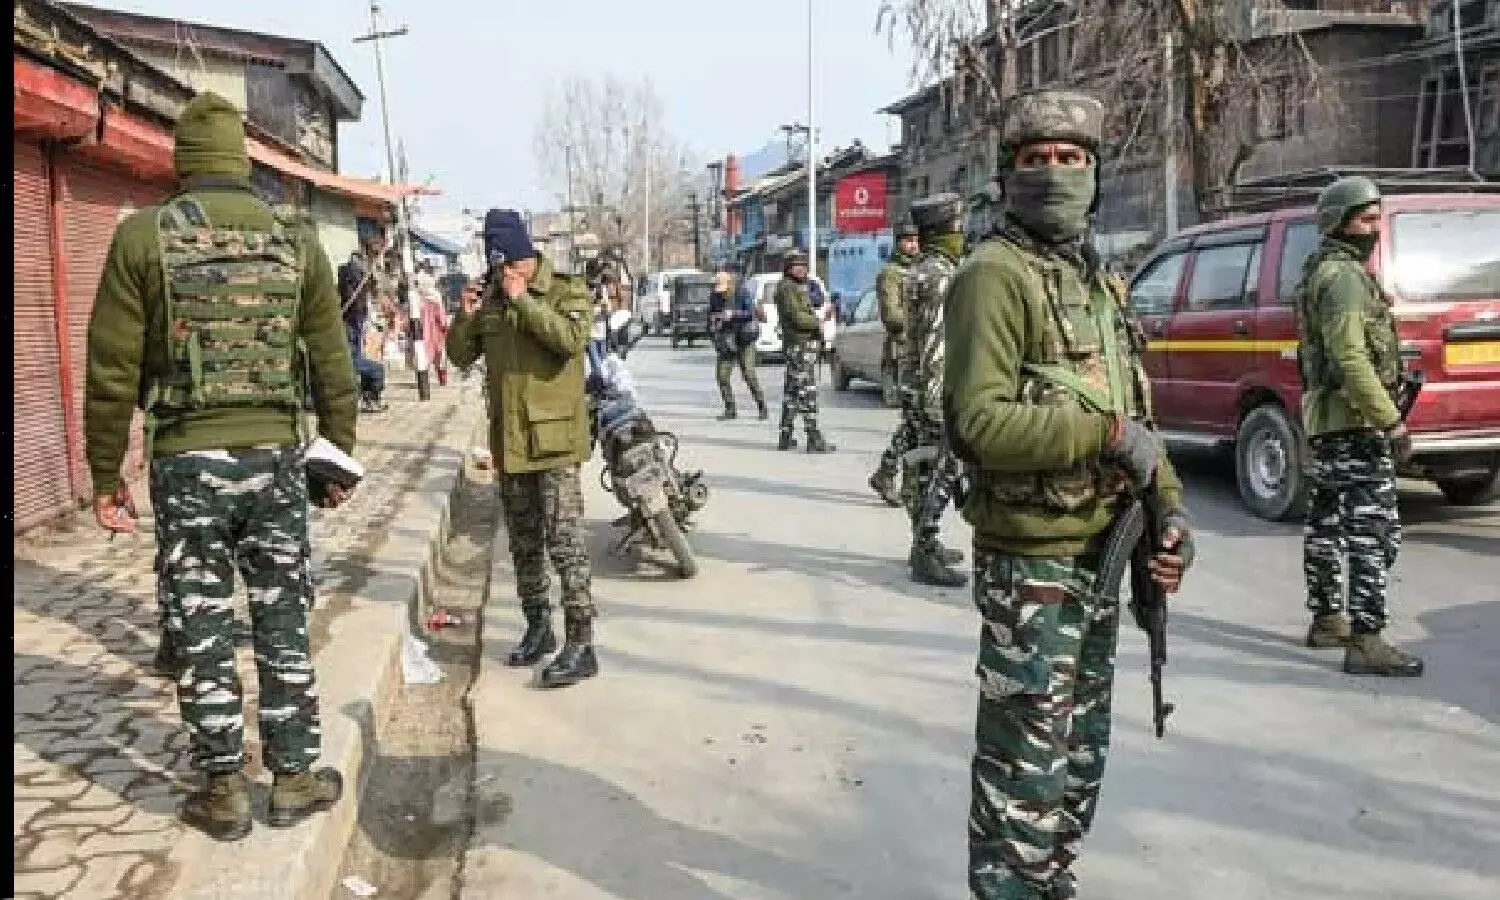 Jammu News : फिर निशाना बने बिहारी मजदूर, घाटी में आतंकियों का कहर जारी, बाजार जाने वाले सभी रास्ते बंद